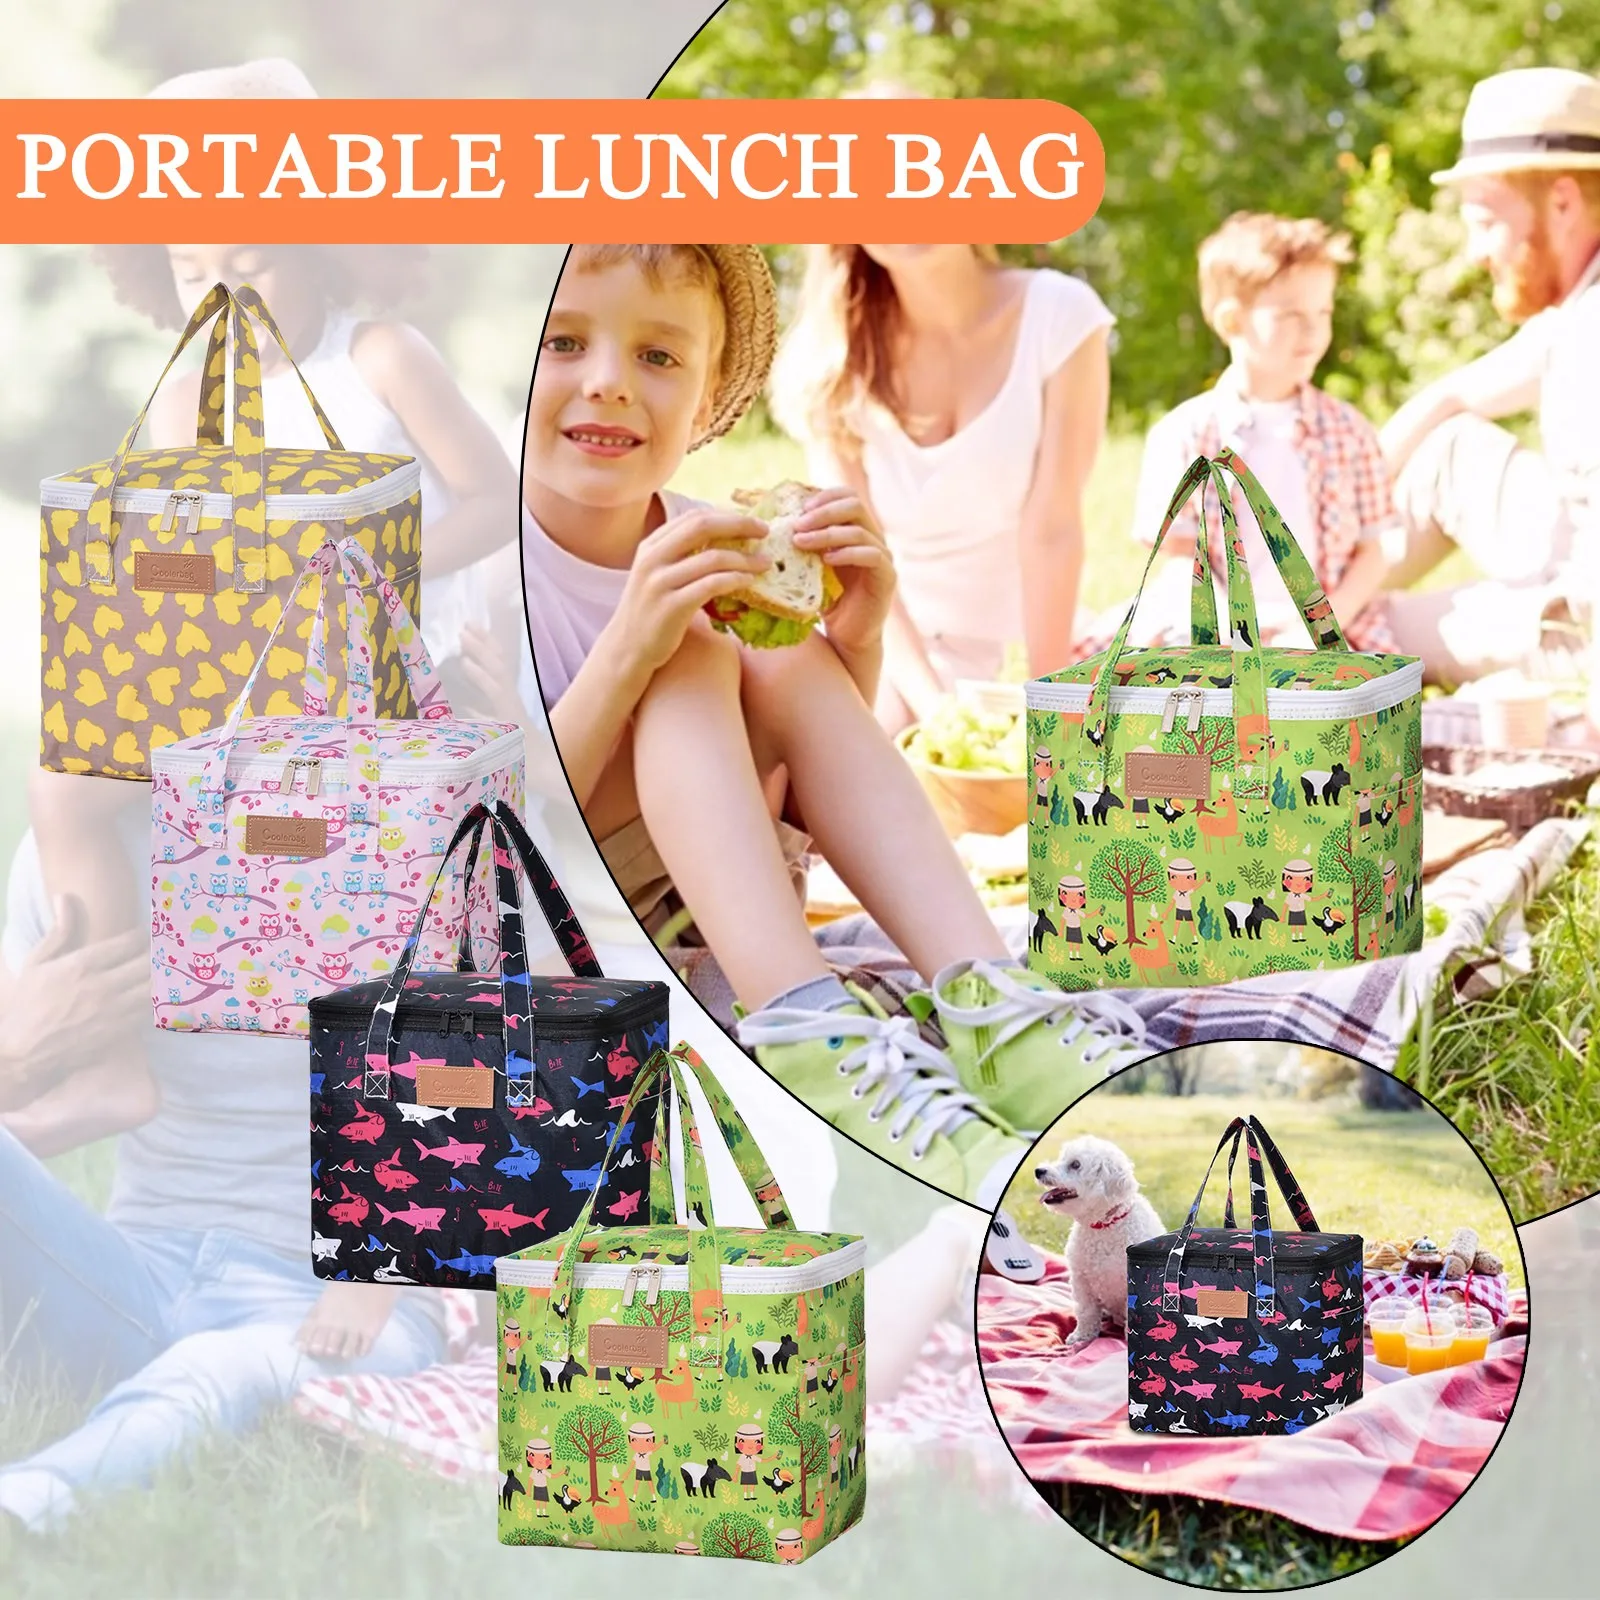 Tote Açık Çanta Kutusu Yalıtım Gıda Termal saklama çantası Öğle Yemeği Piknik Kamp Öğle Yemeği Çantası Erkekler Öğle Yemeği Çantası İş için Yalıtımlı